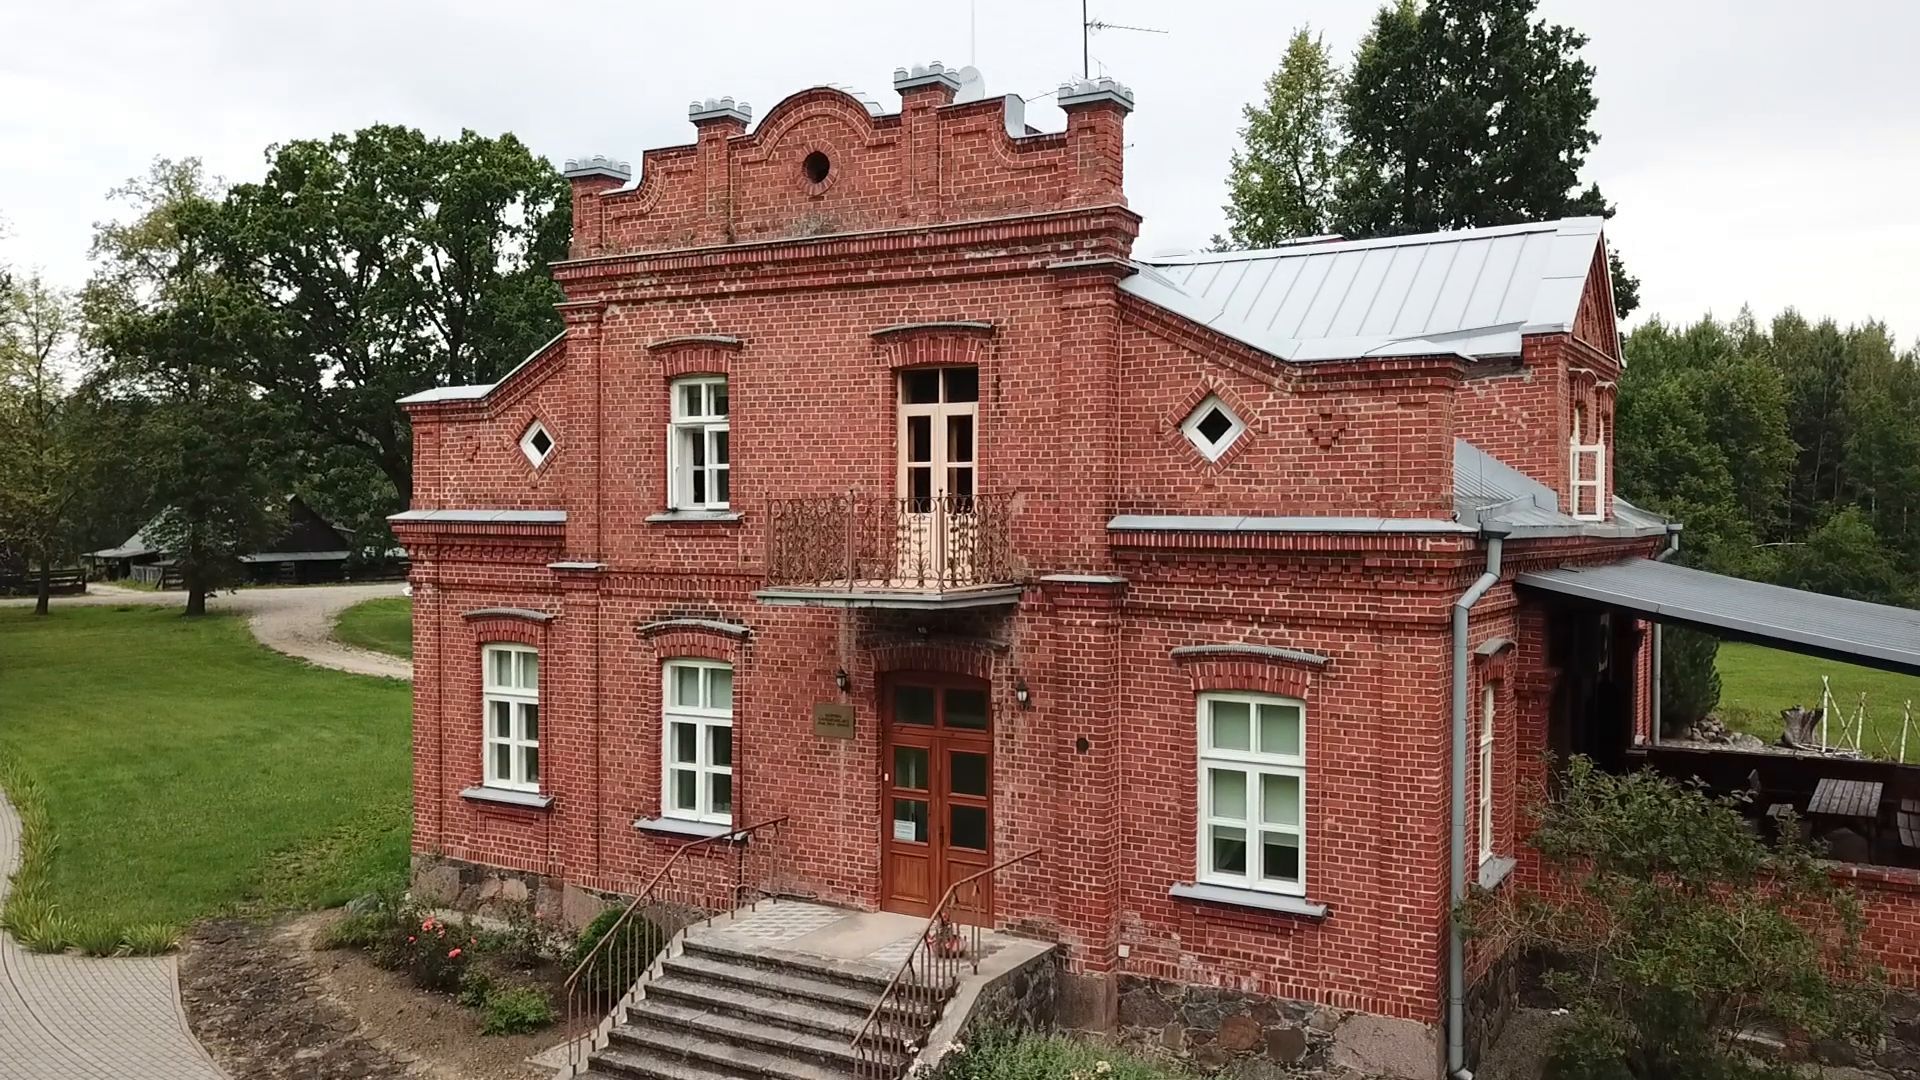 Puziniškis Museum (Gabrielė Petkevičaitė-Bitė’s birthplace)